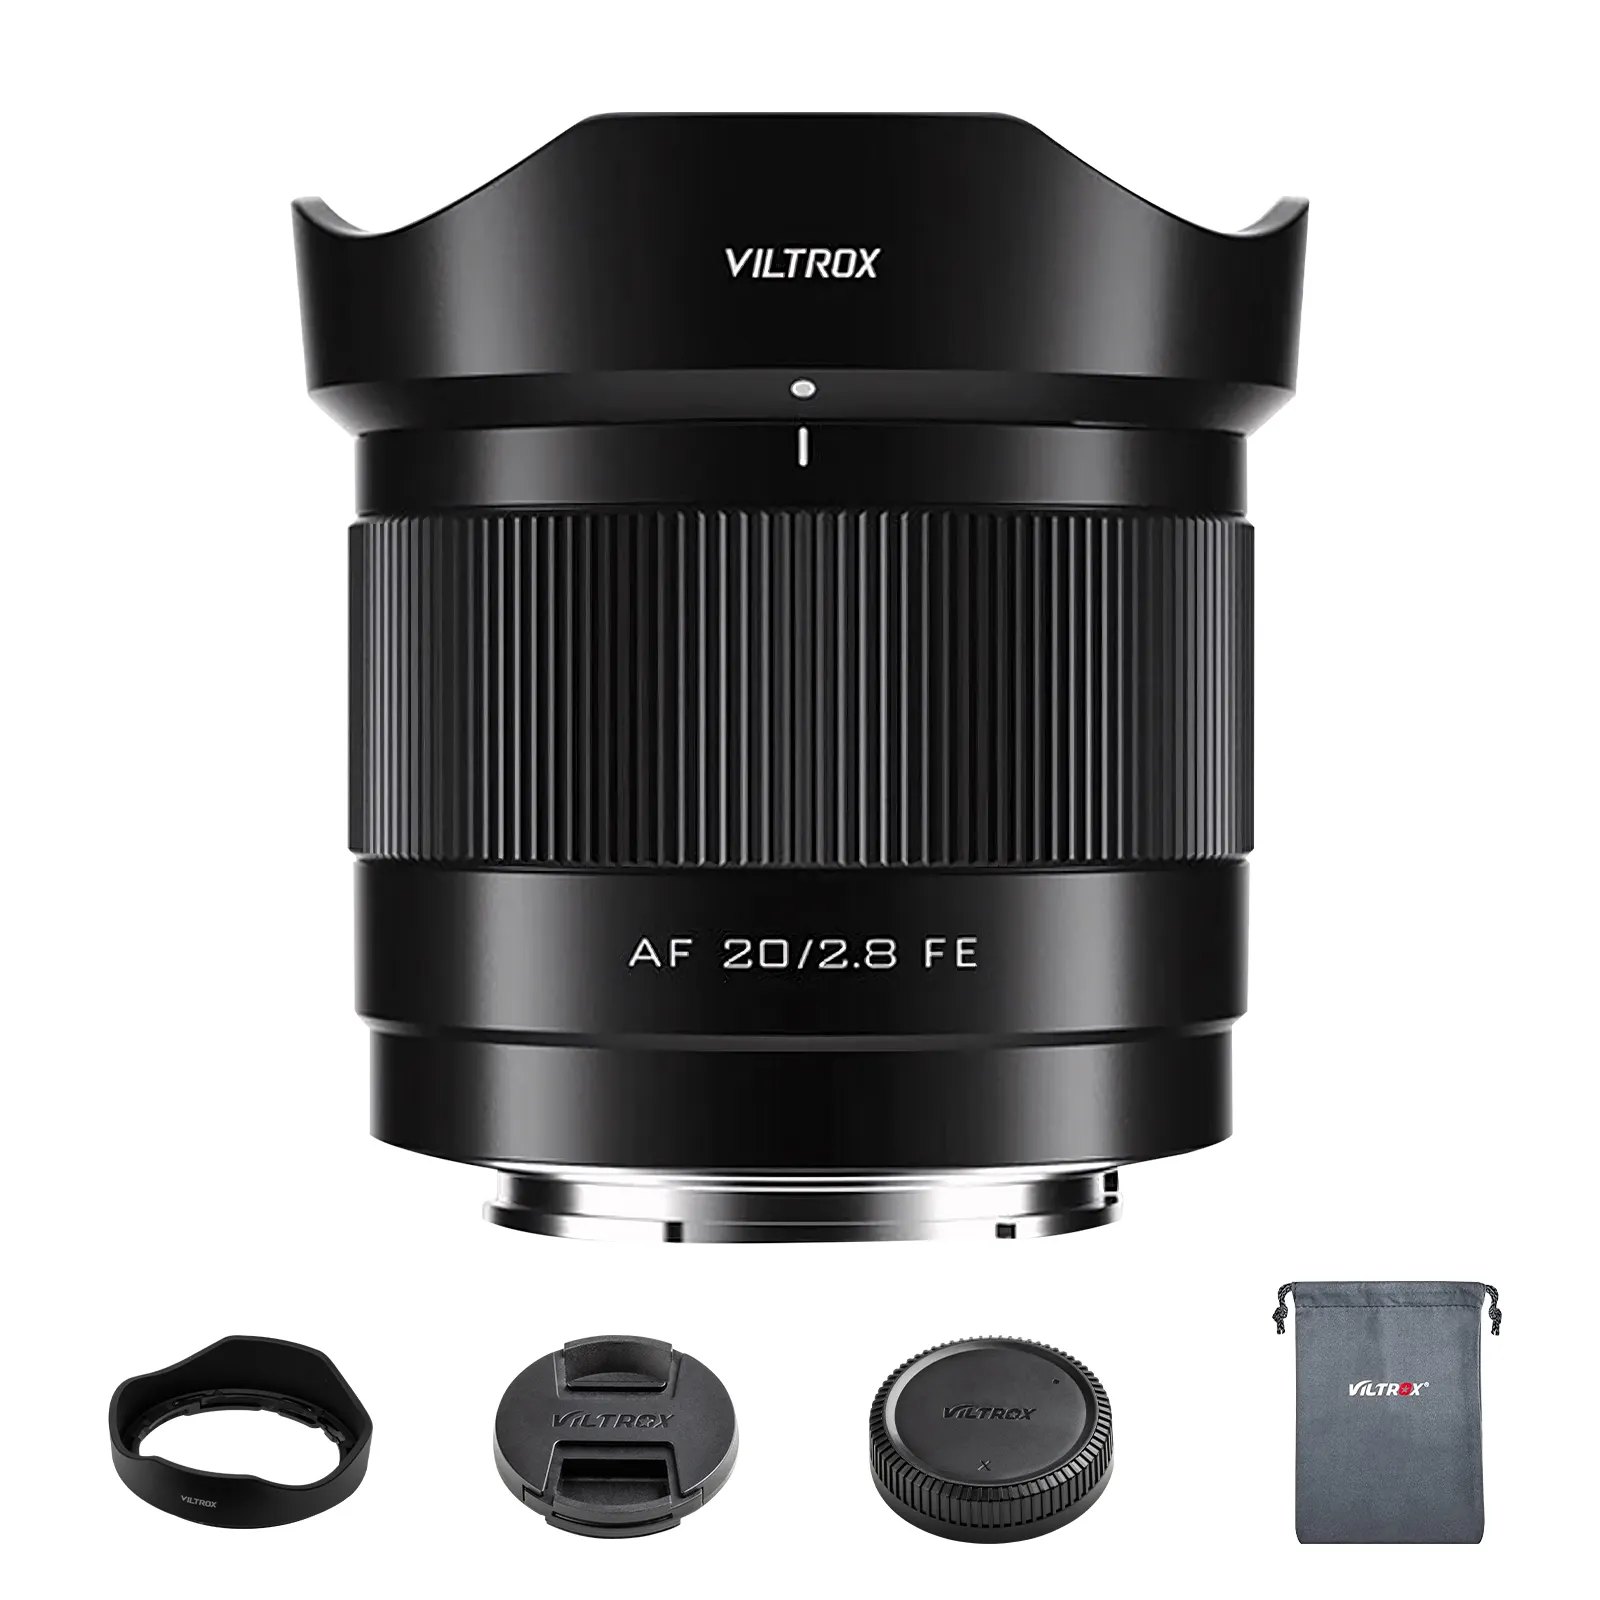 Viltrox 20mm F2.8 siêu góc rộng tự động lấy nét cho máy ảnh Nikon Full Frame z-mount lens